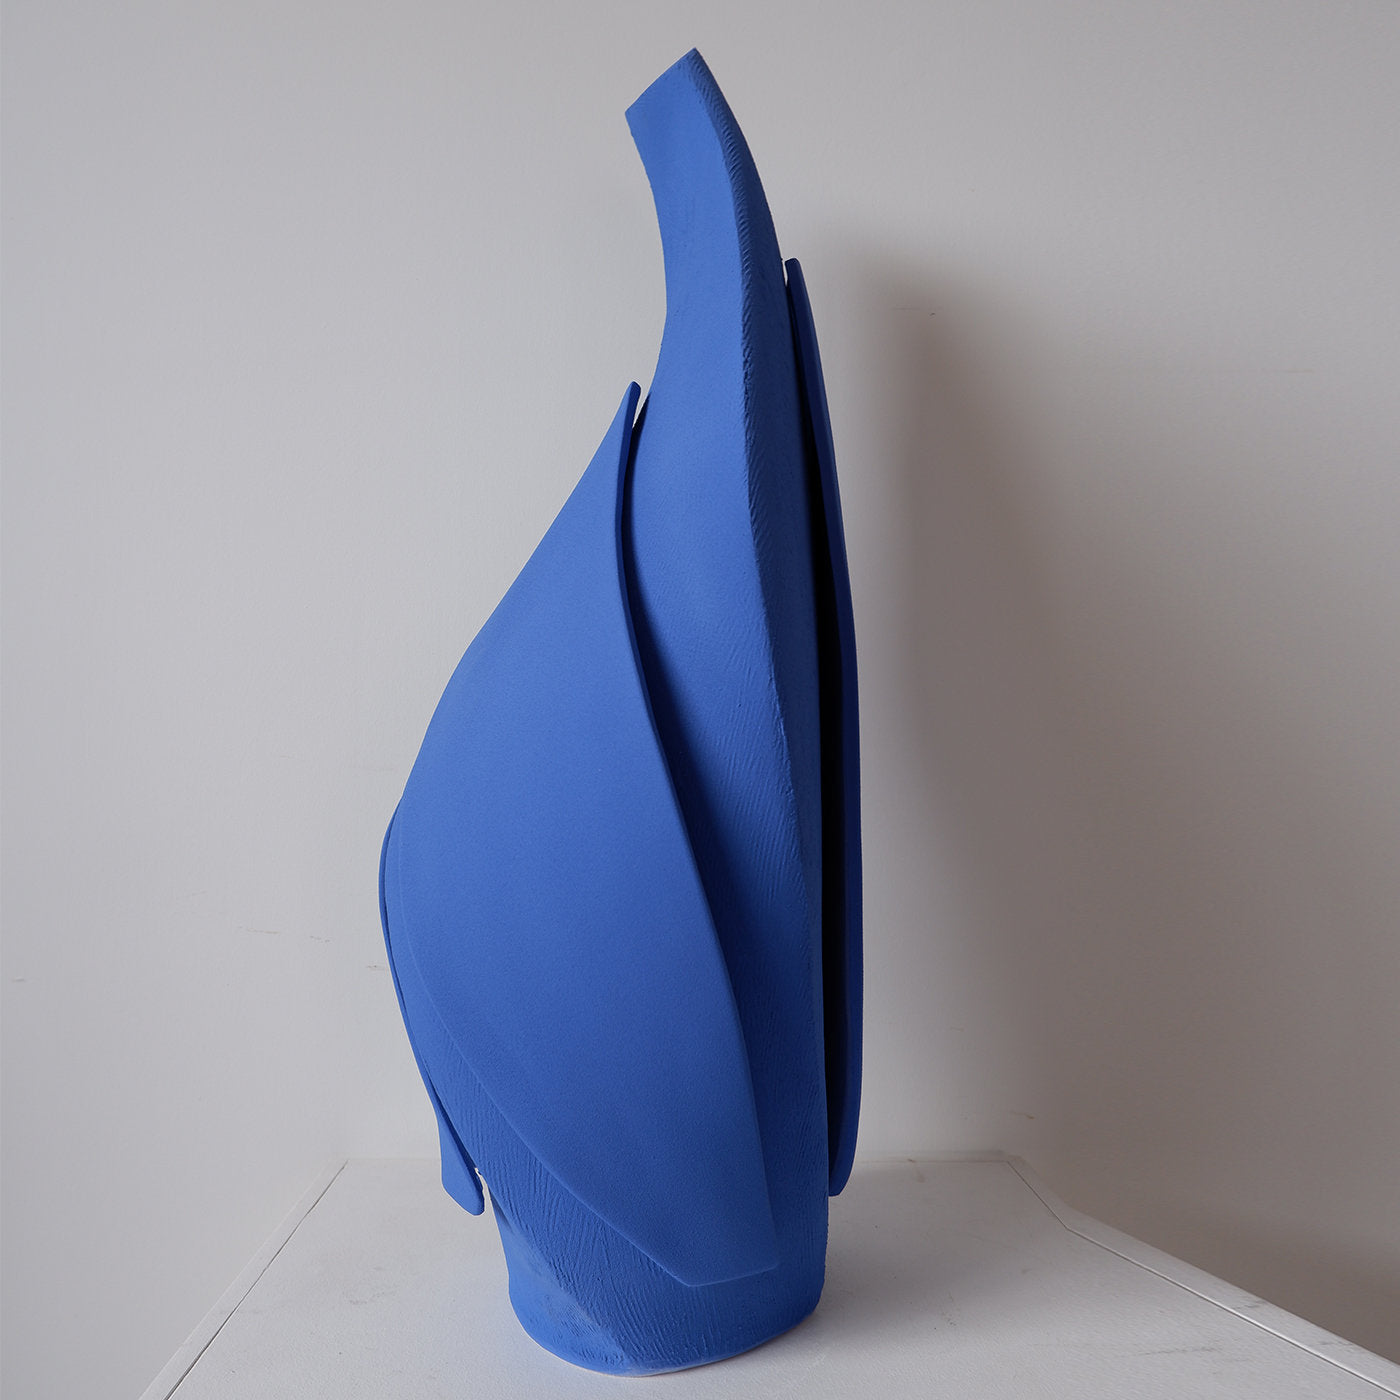 Blue Demeter Vase #1 - Alternative view 1